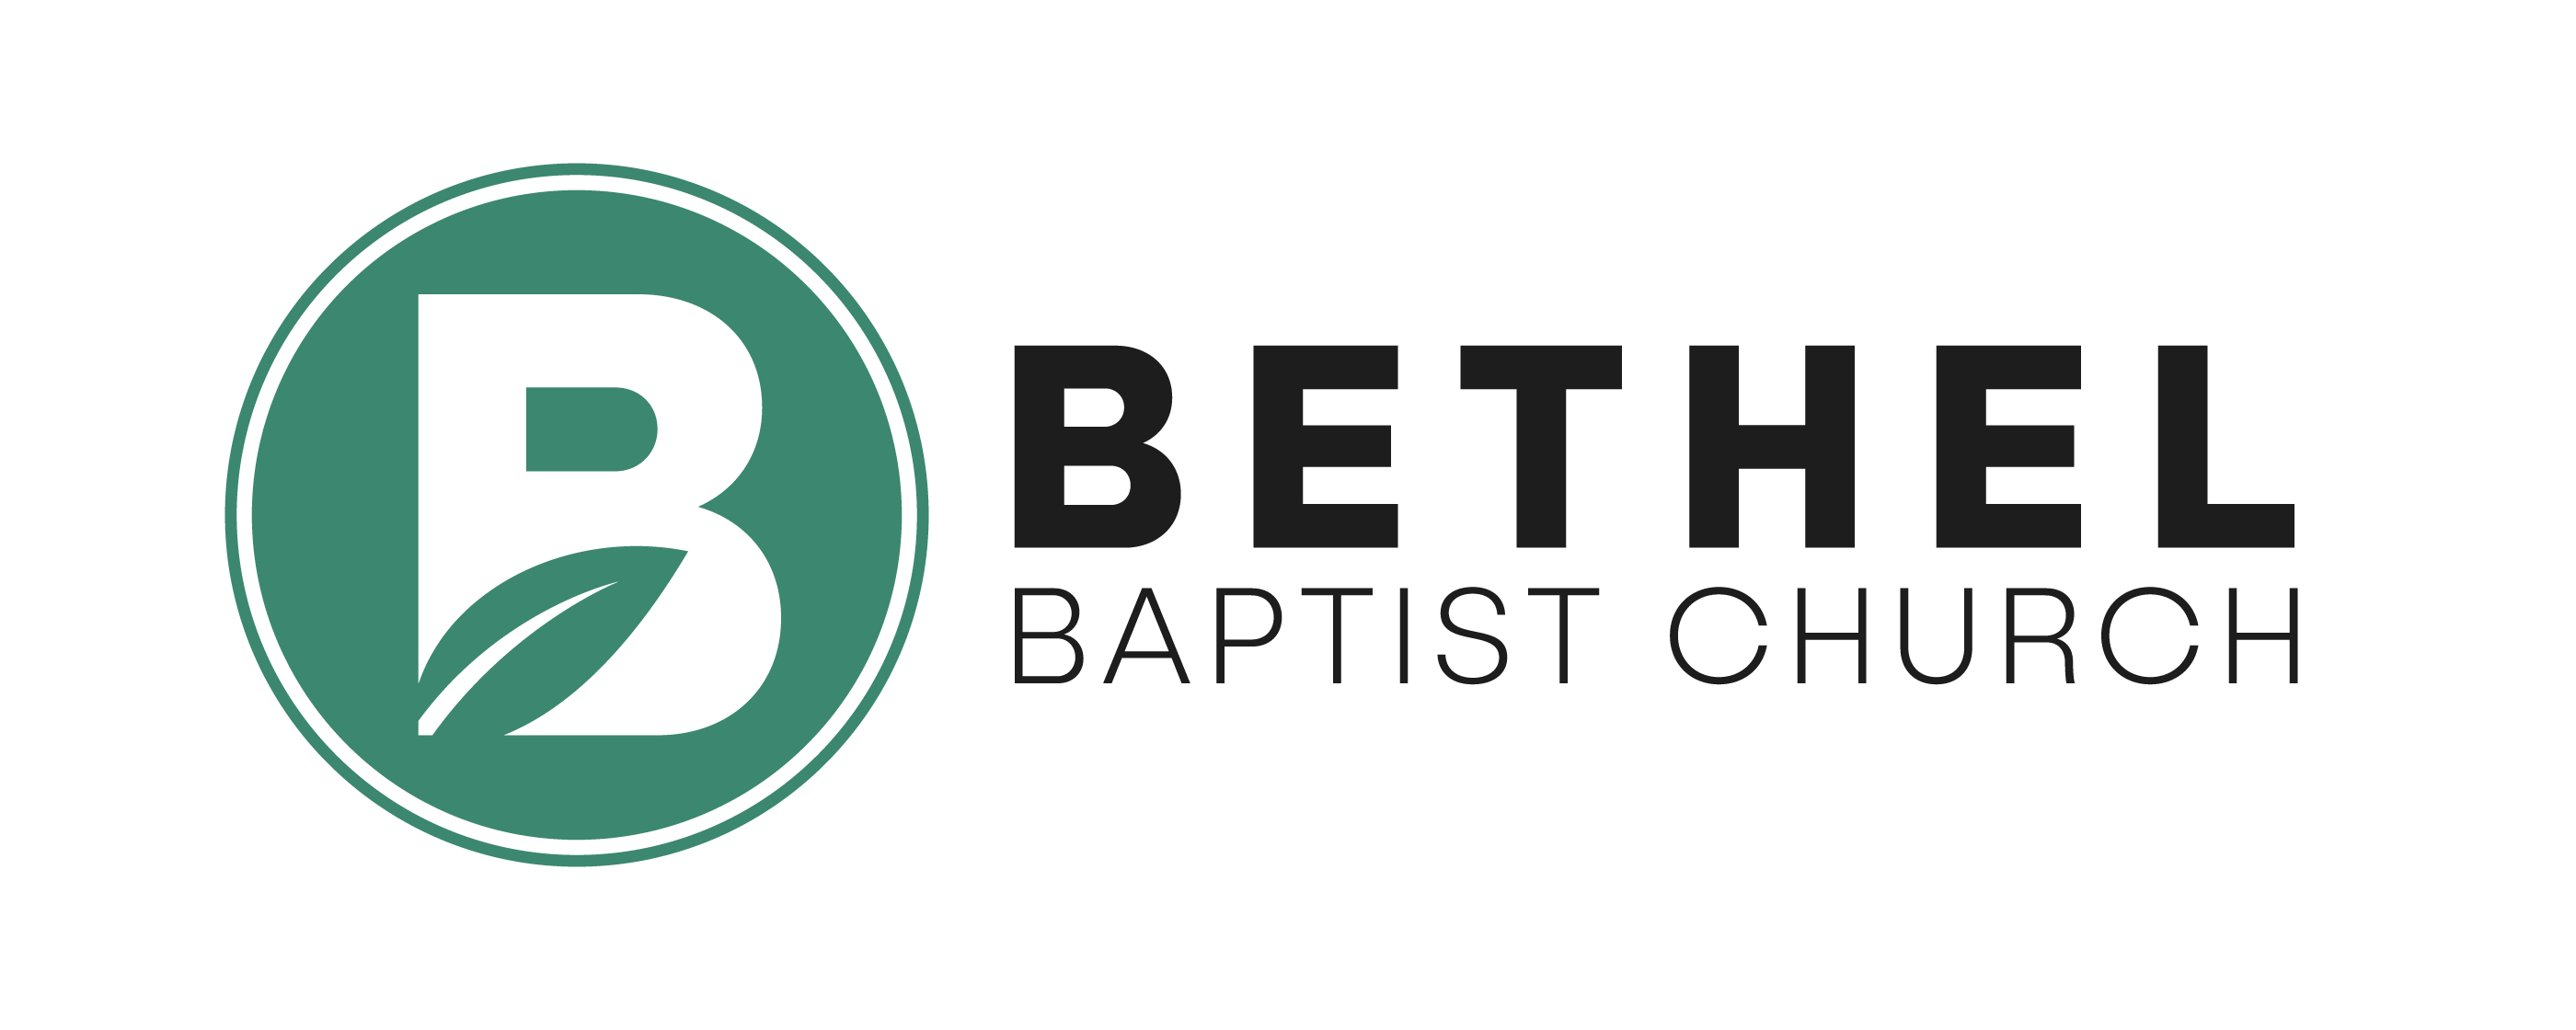 Bethel Baptist Church Footer Logo